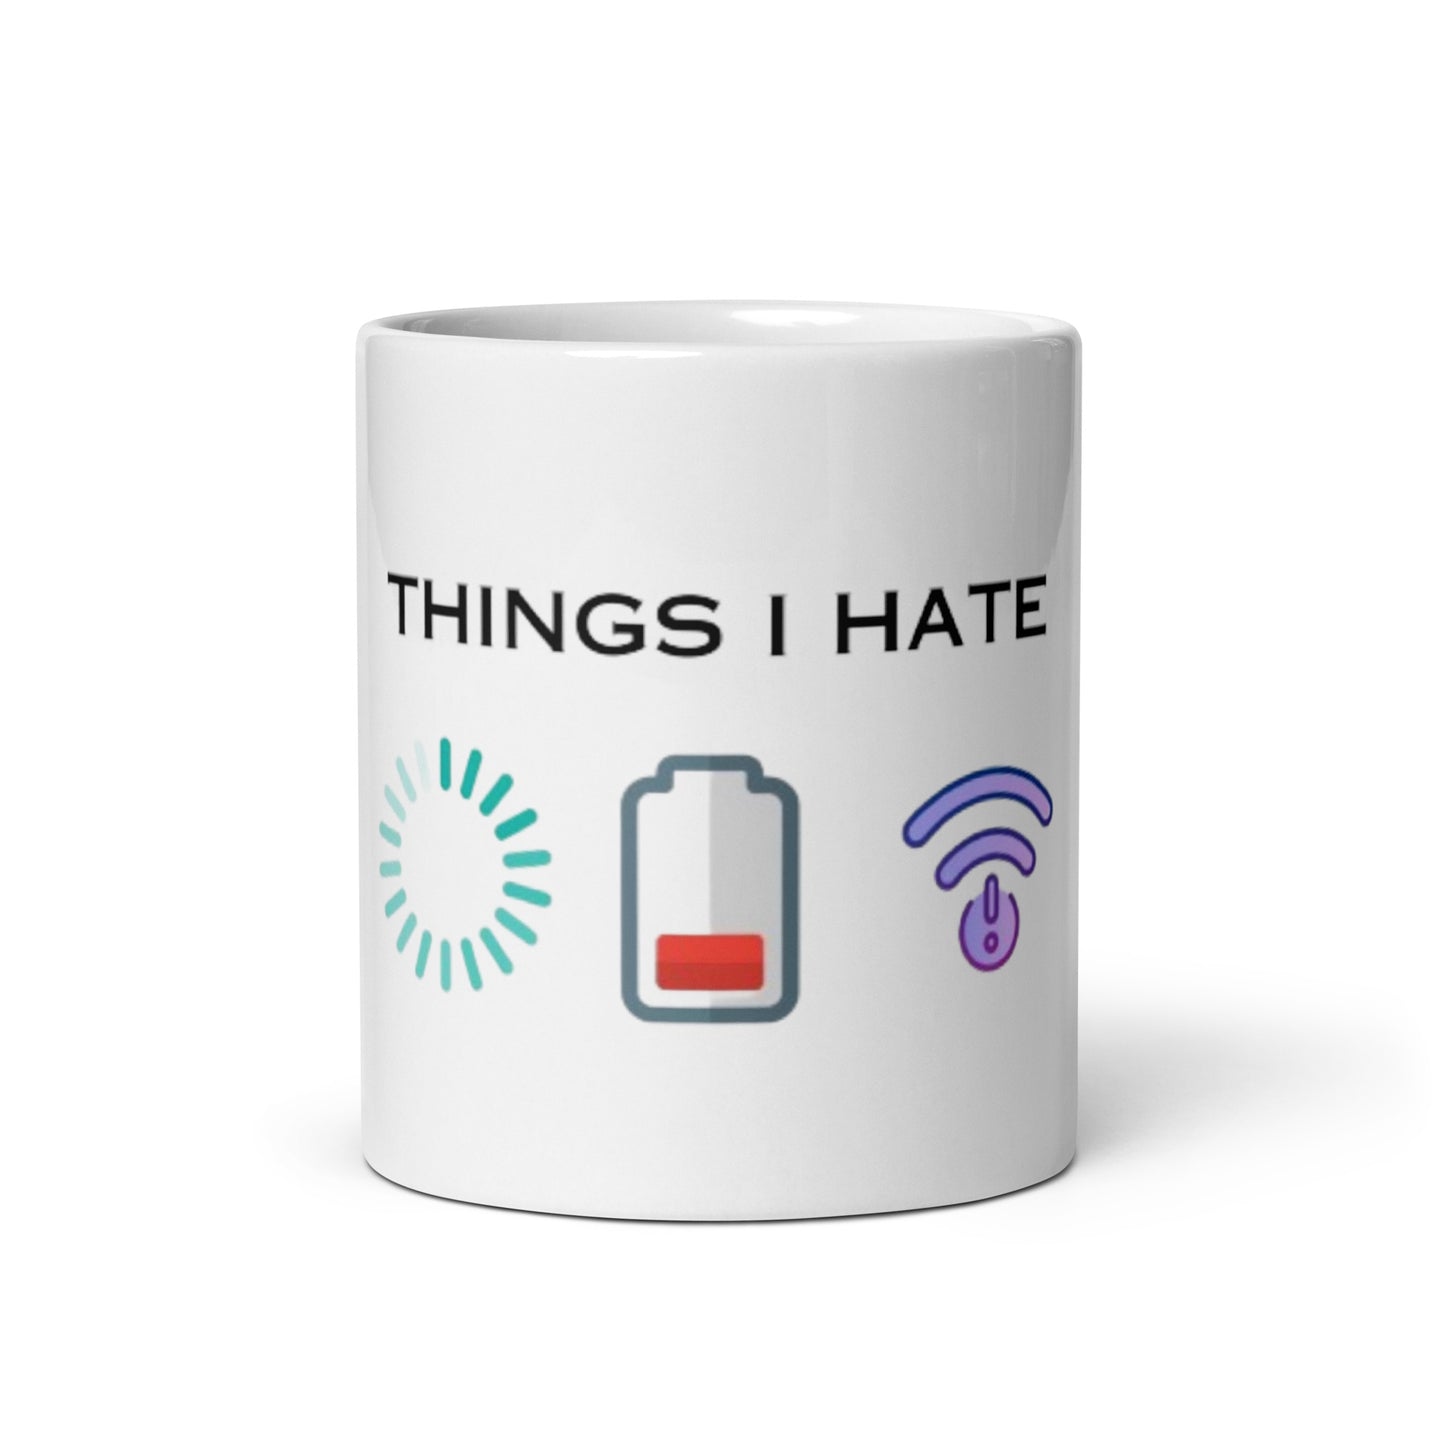 Things I Hate mug